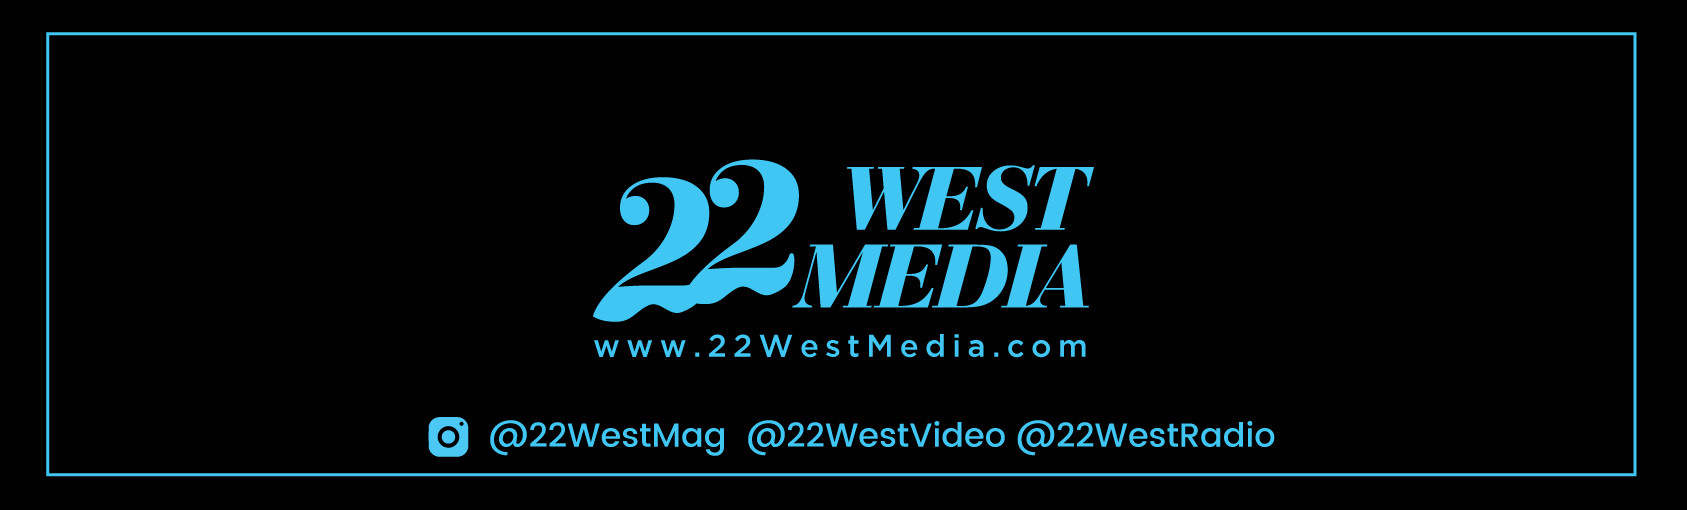 22 West Media banner